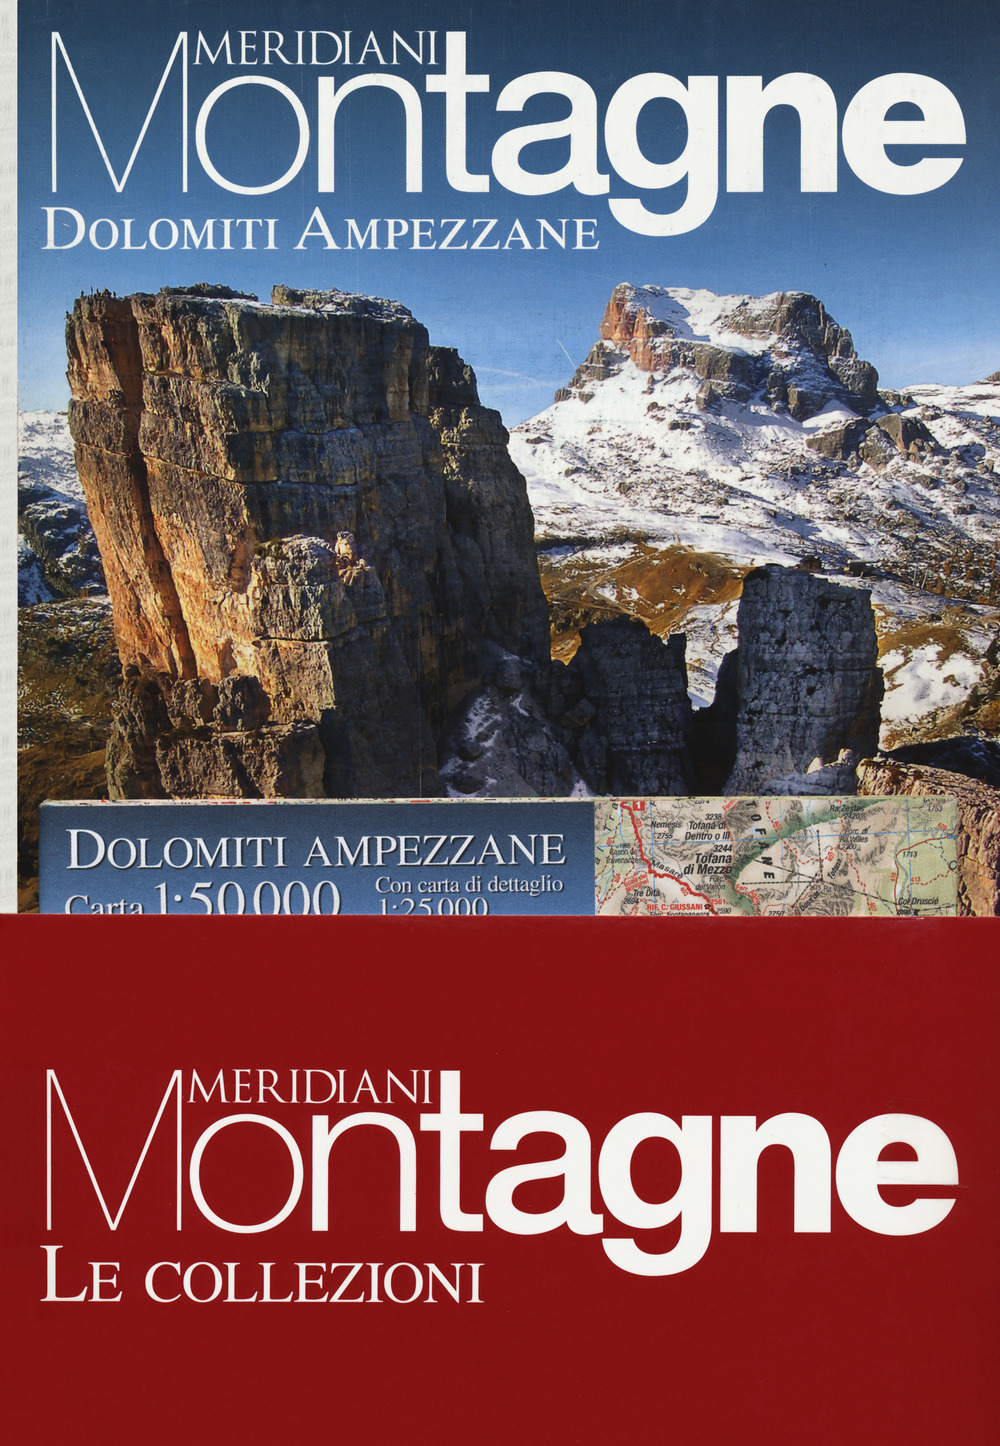 Pelmo, Civetta, Pale di San Lucano-Dolomiti Ampezzane. Con cartine